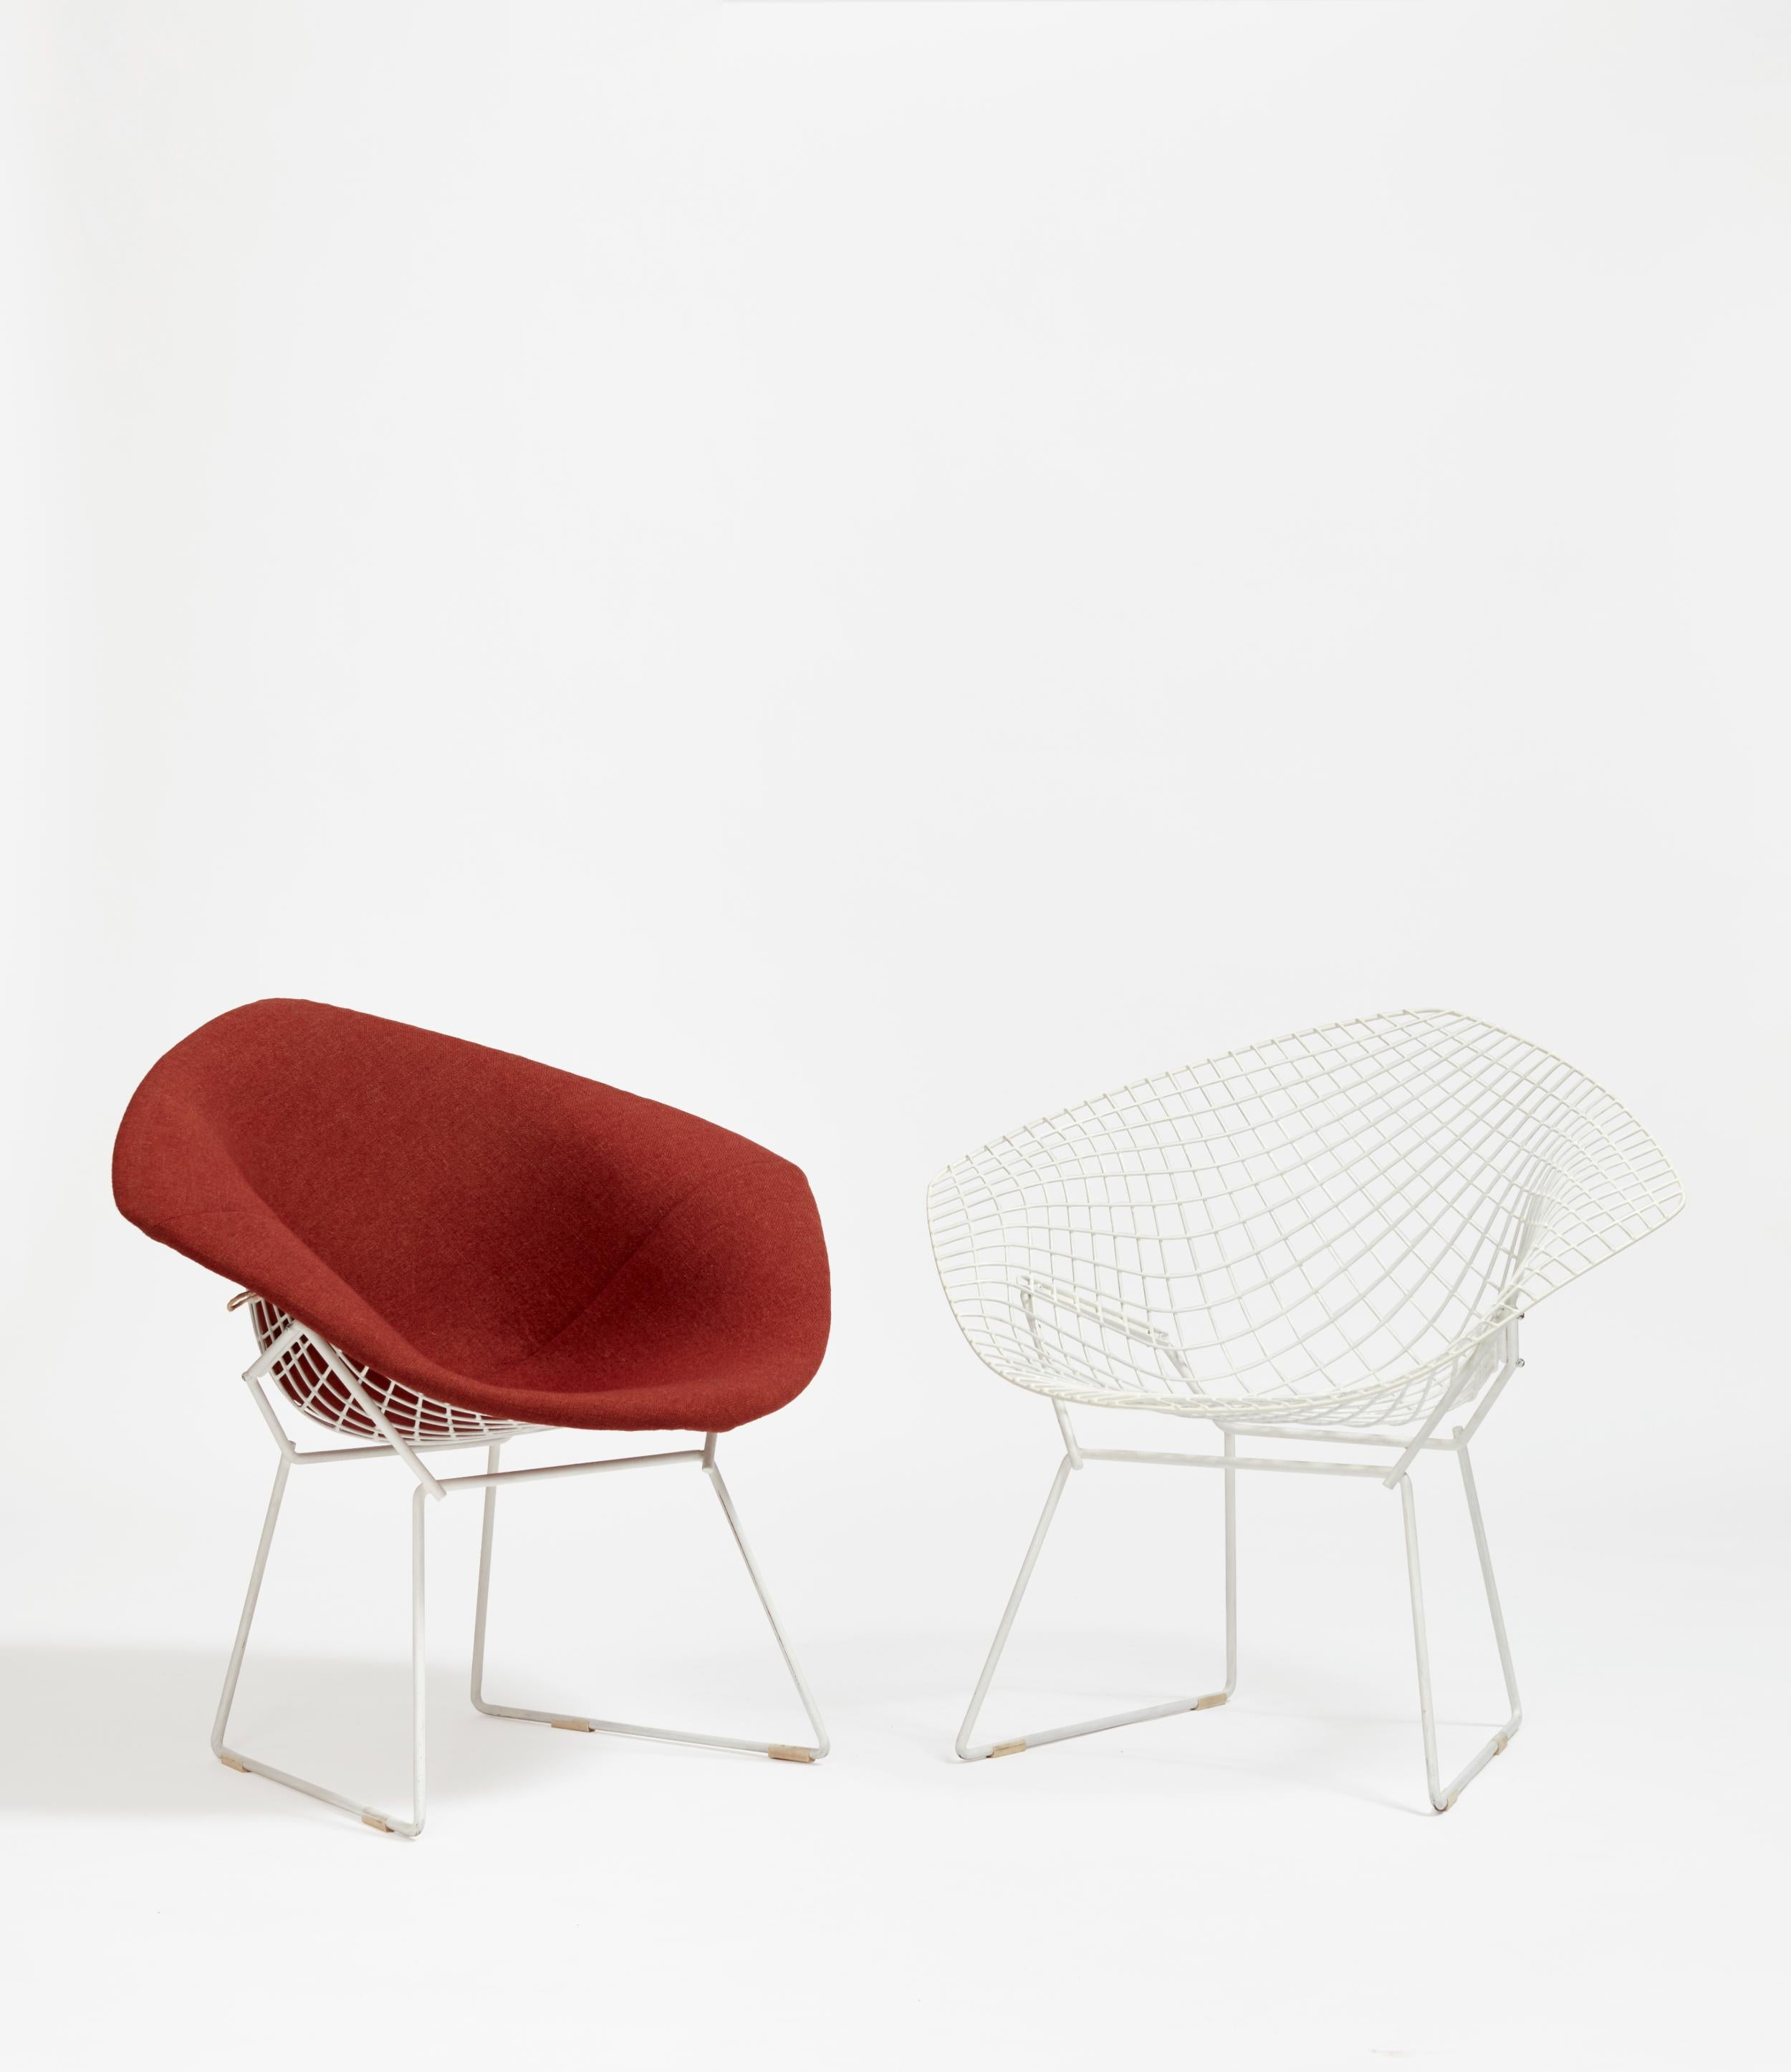 En utilisant des matériaux industriels tout en élevant la chaise au rang d'œuvre d'art, Bertoia a cimenté la conversation autour de l'utilité et de l'esthétique dans le contexte de la conception de meubles. L'angle oblique du siège invite à la